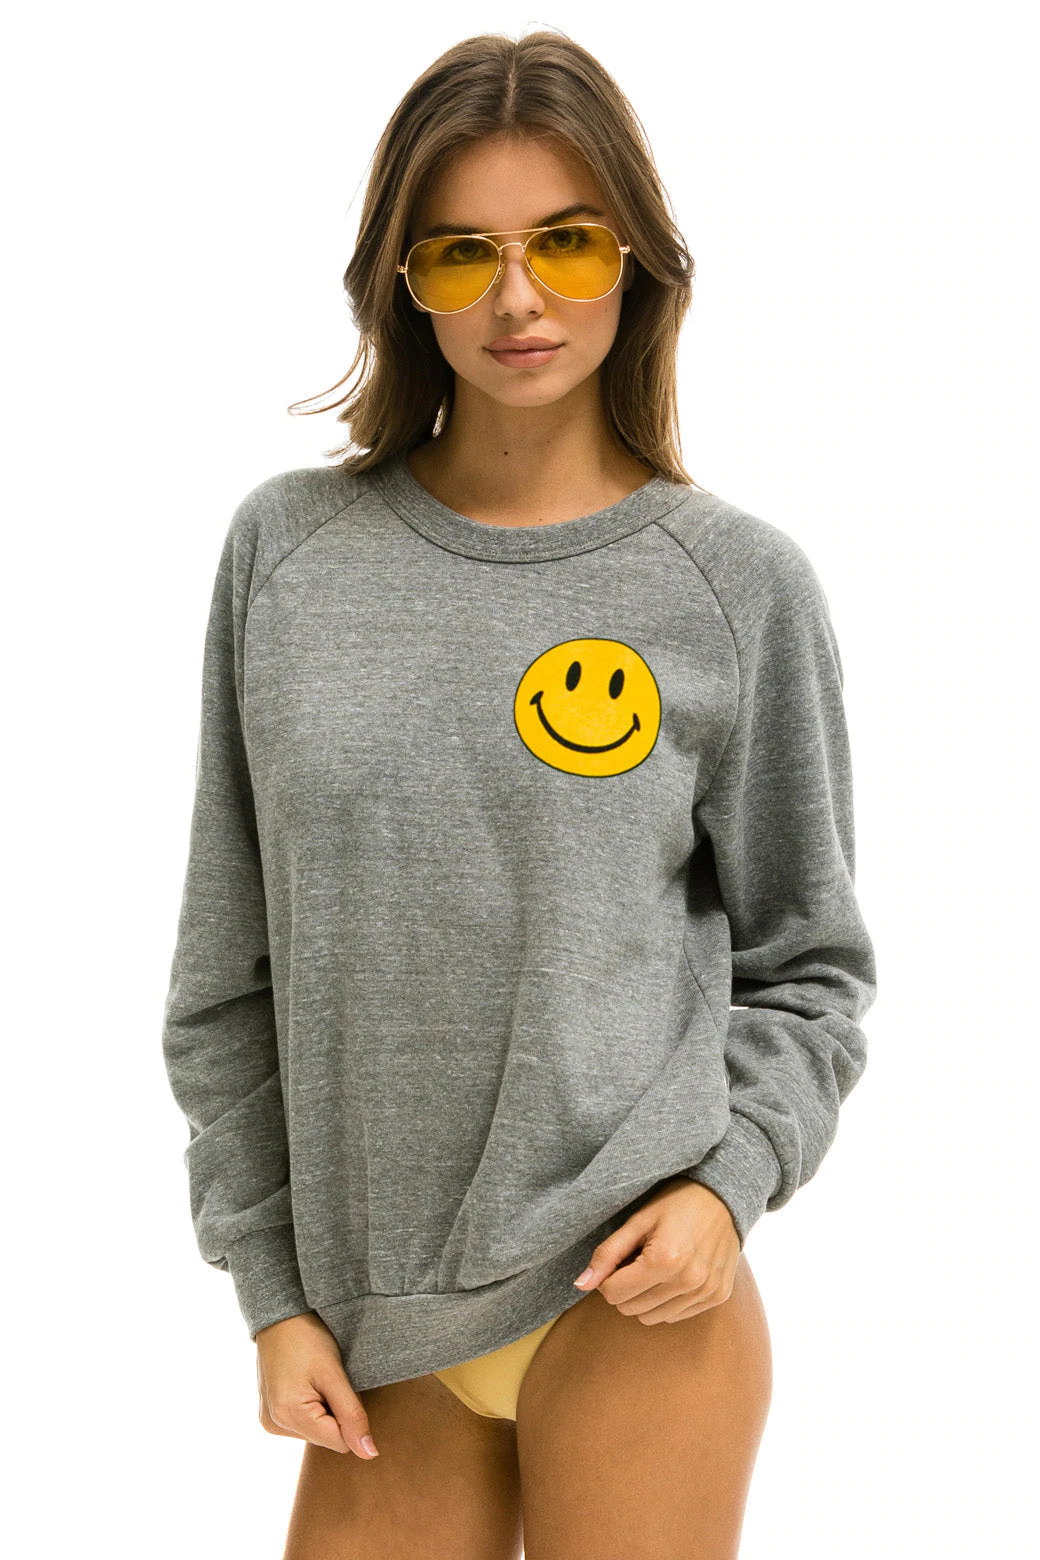 Smiley 2 Sweatshirt